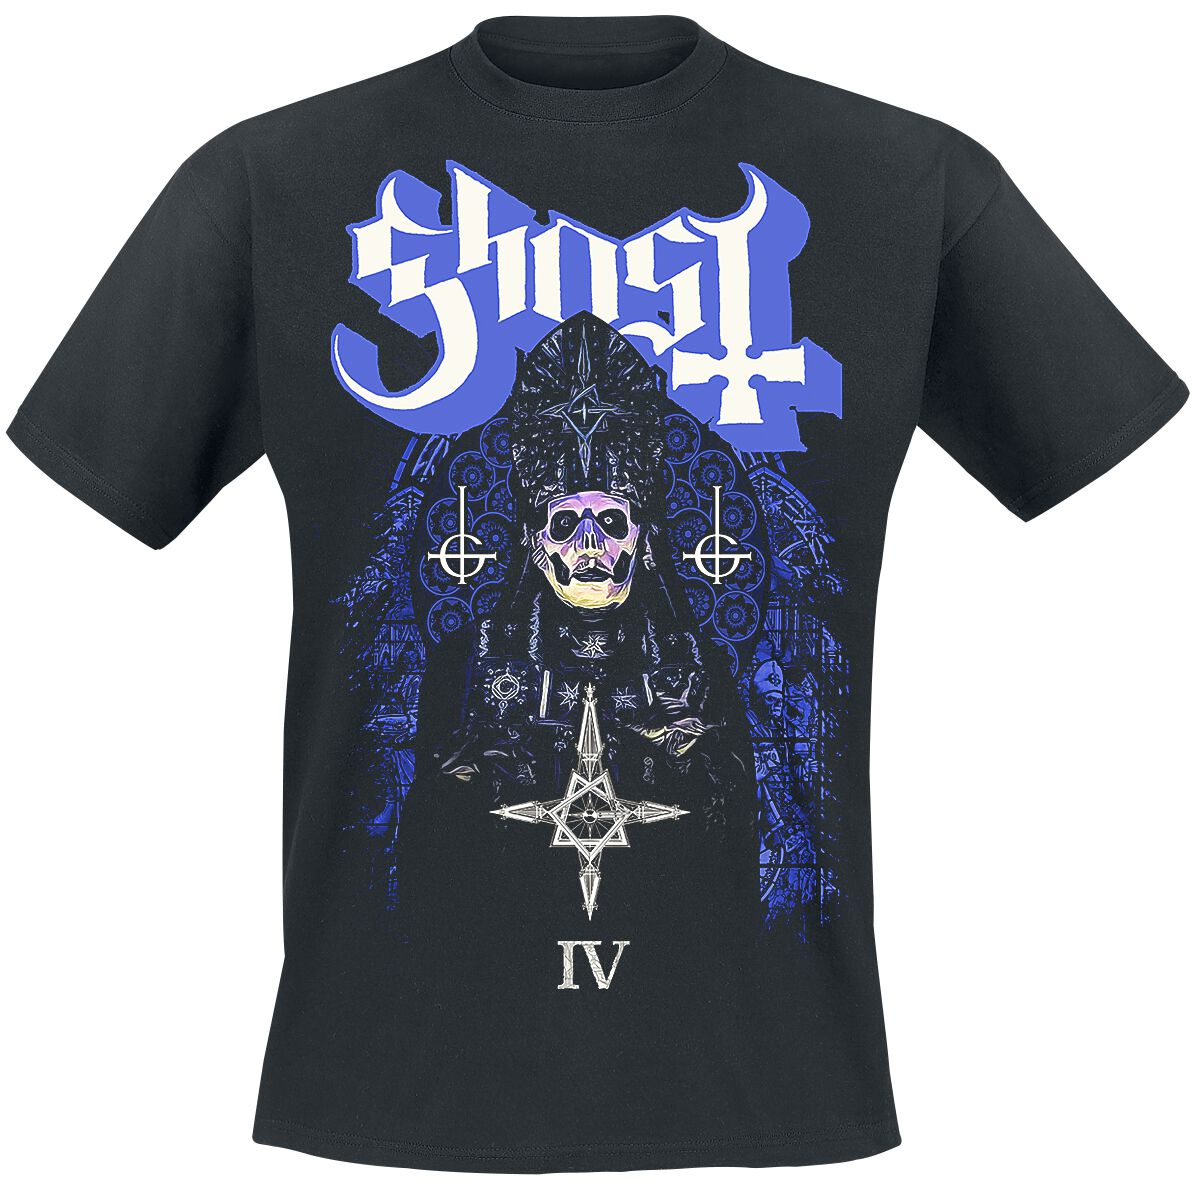 Ghost T-Shirt - Stained Glass IV - S bis 4XL - für Männer - Größe L - schwarz  - Lizenziertes Merchandise!